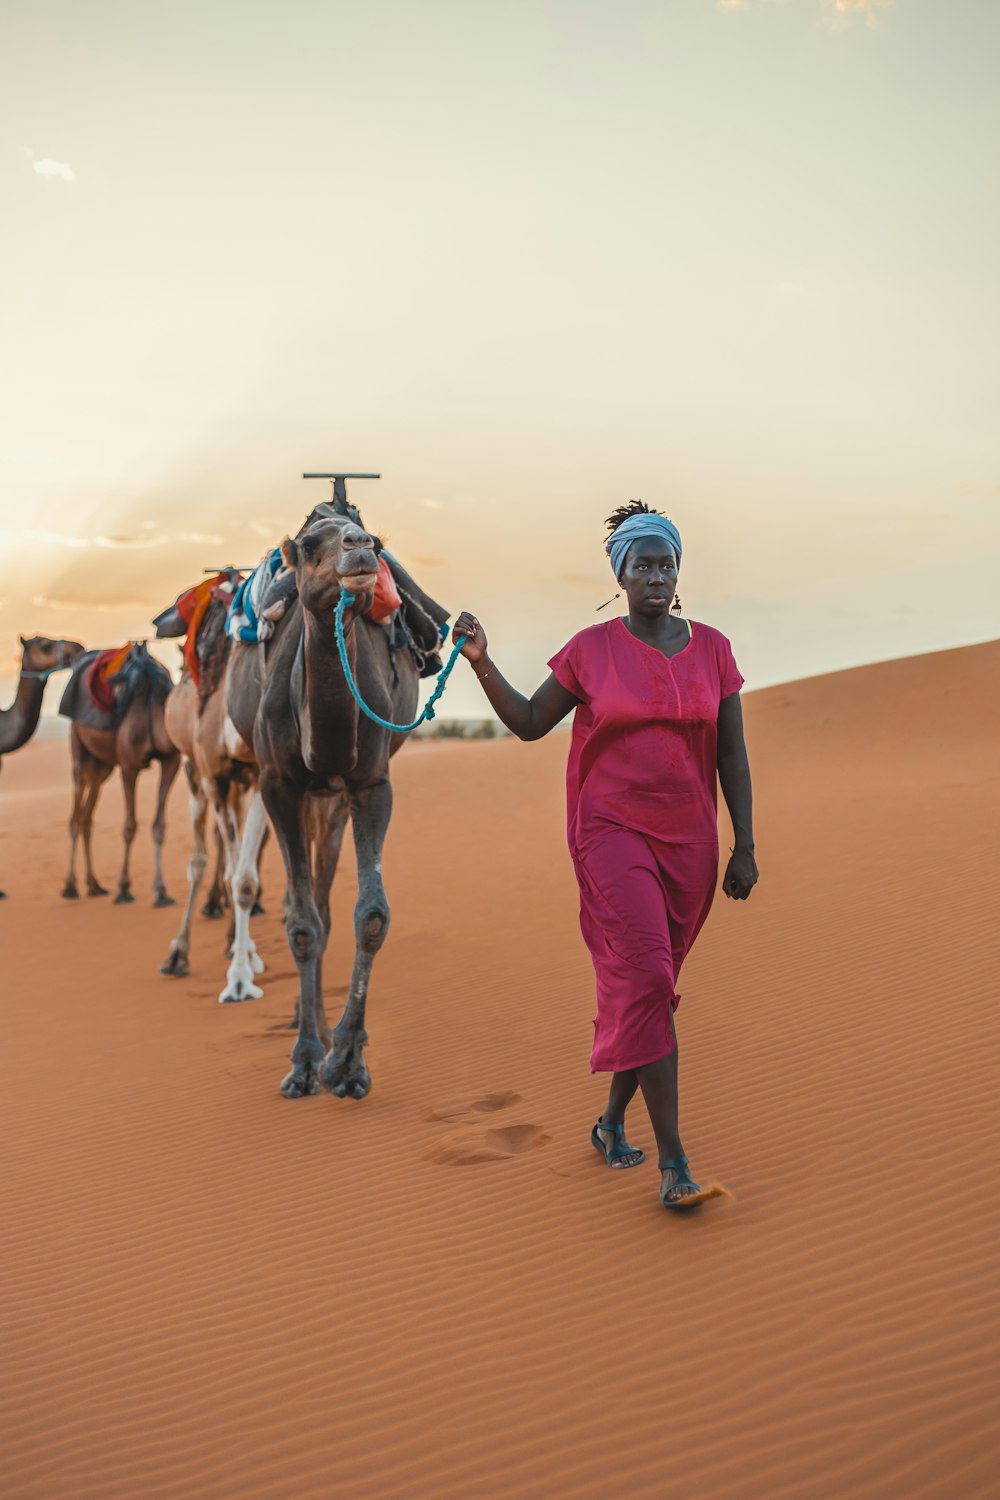 Un homme marchant avec des chameaux